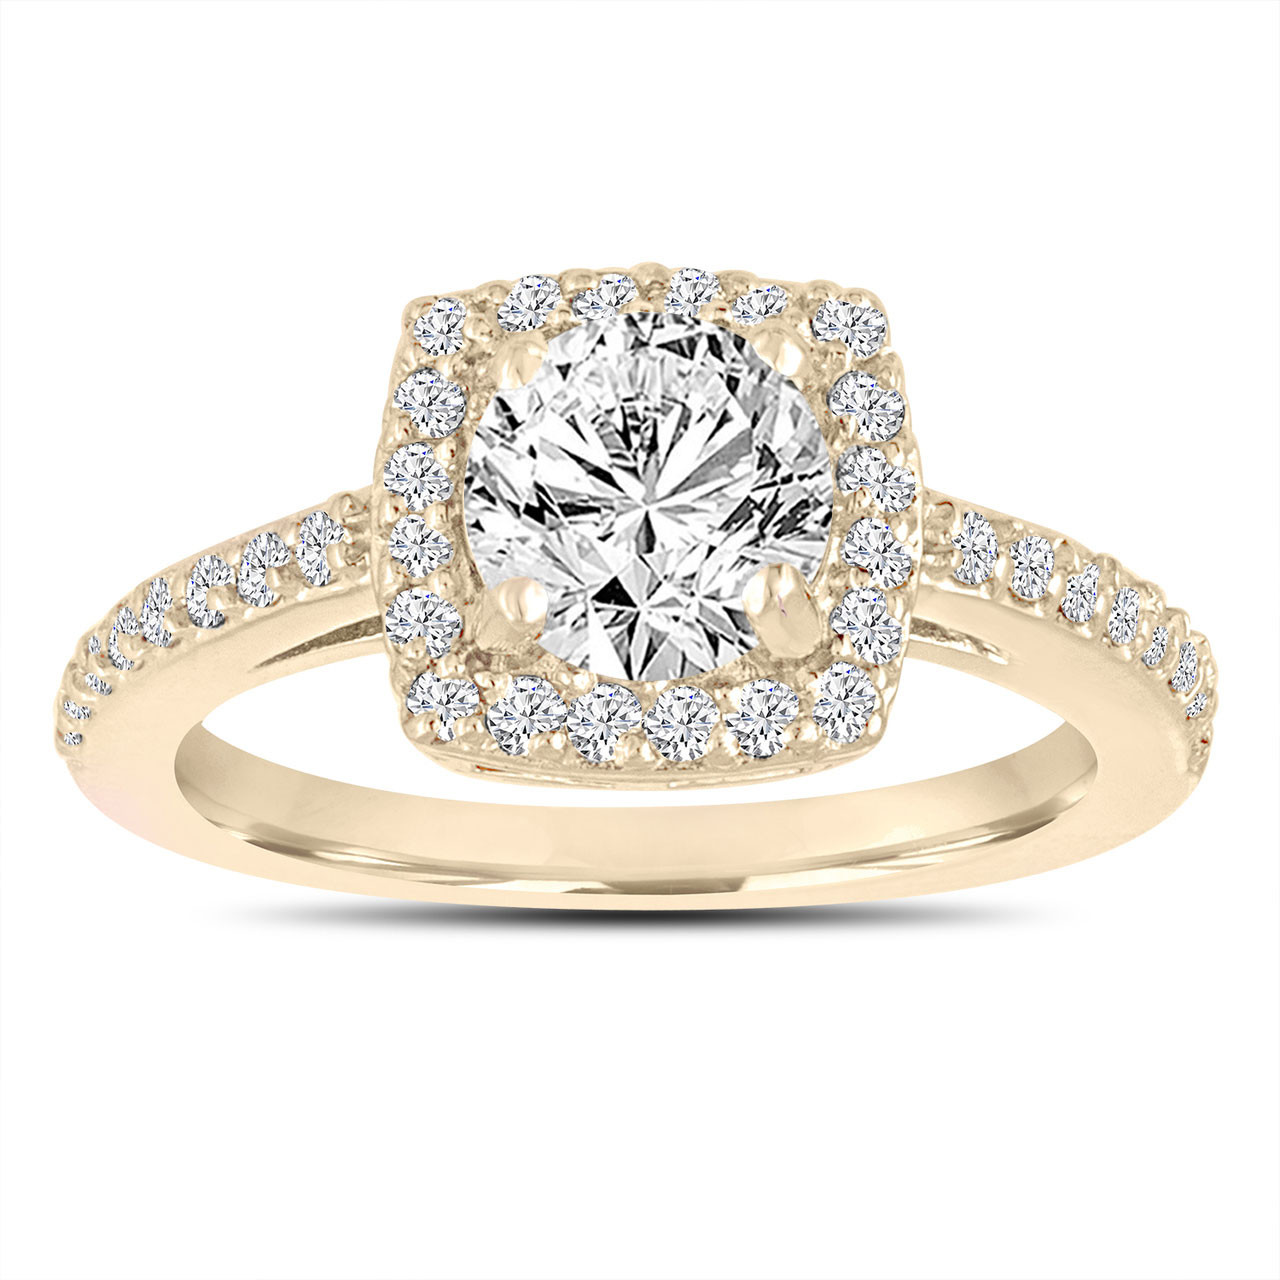 Showroom of 18k yellow gold diamond ring | Jewelxy - 208890